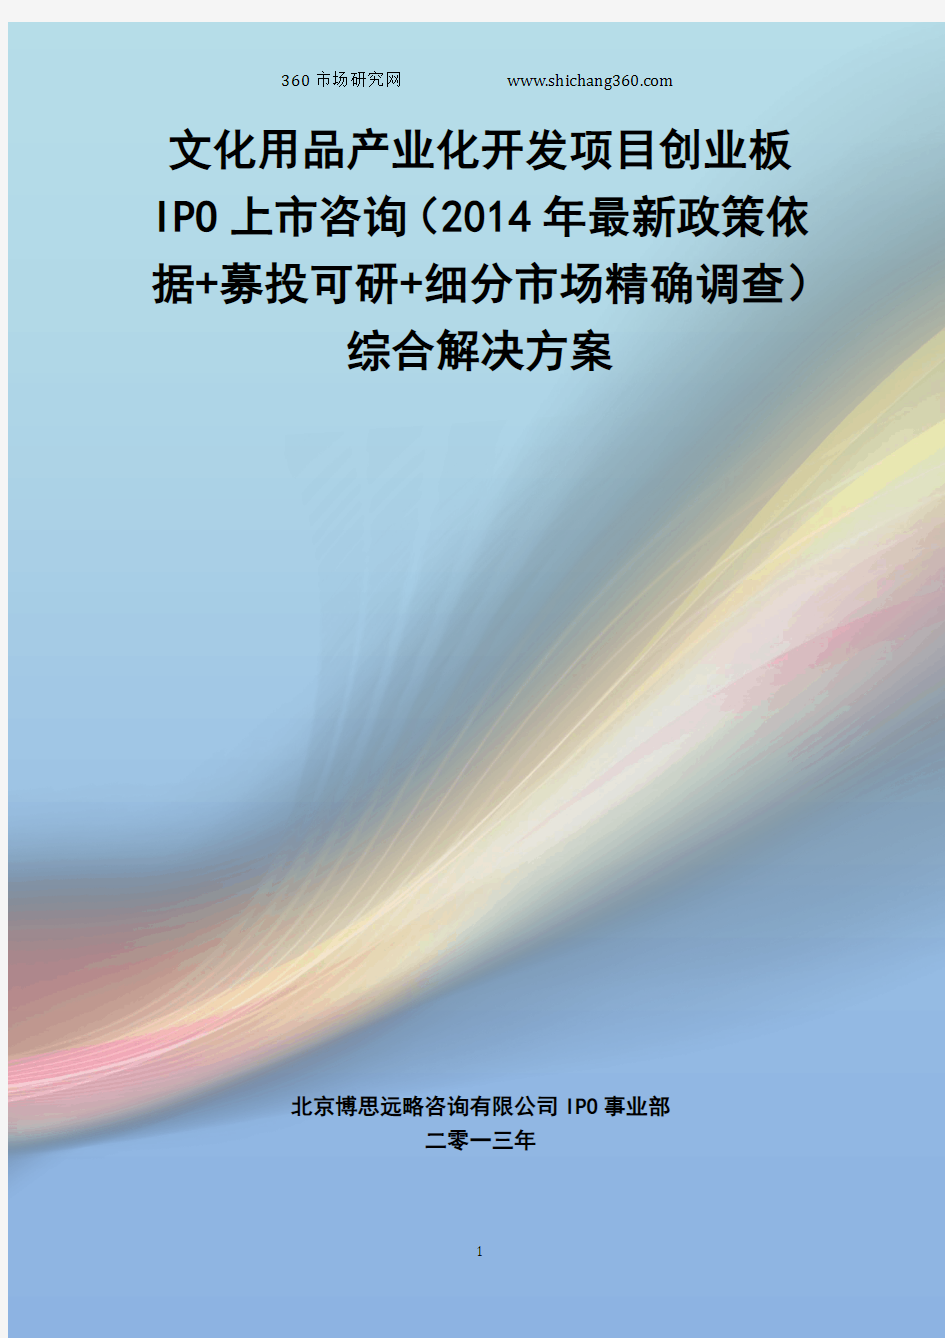 文化用品产业化开发IPO上市咨询(2014年最新政策+募投可研+细分市场调查)综合解决方案